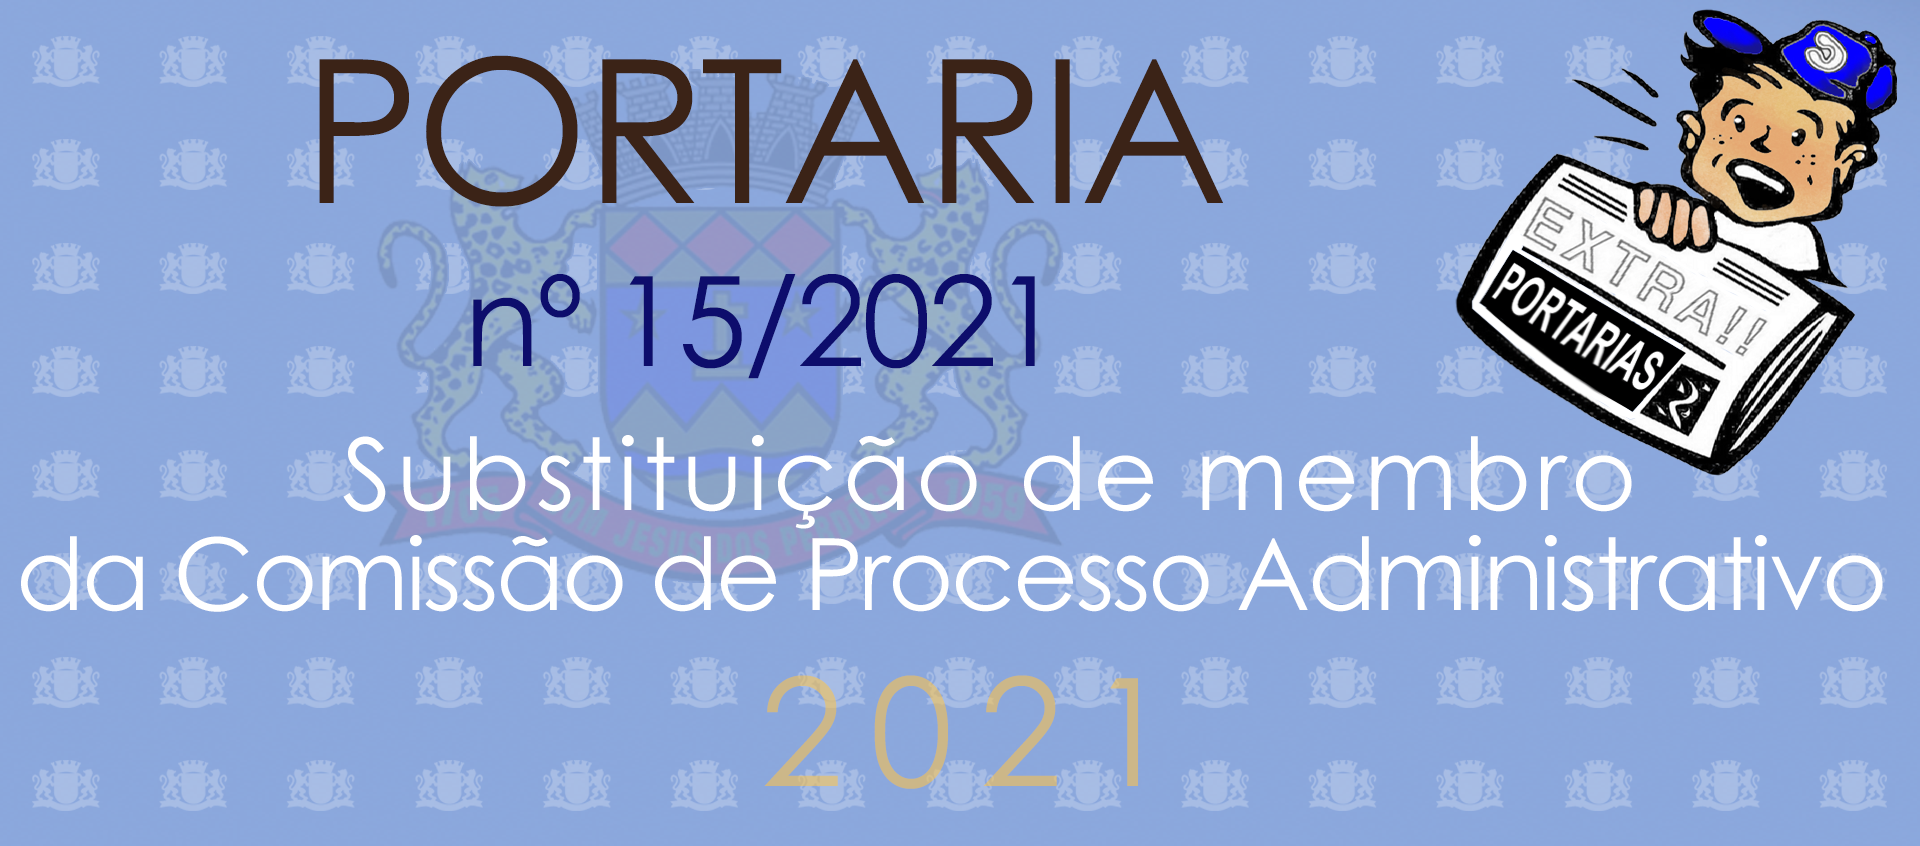 Portaria nº 15 - 2021 - Substituição de membro de Comissão de Processo Adminstrativo.